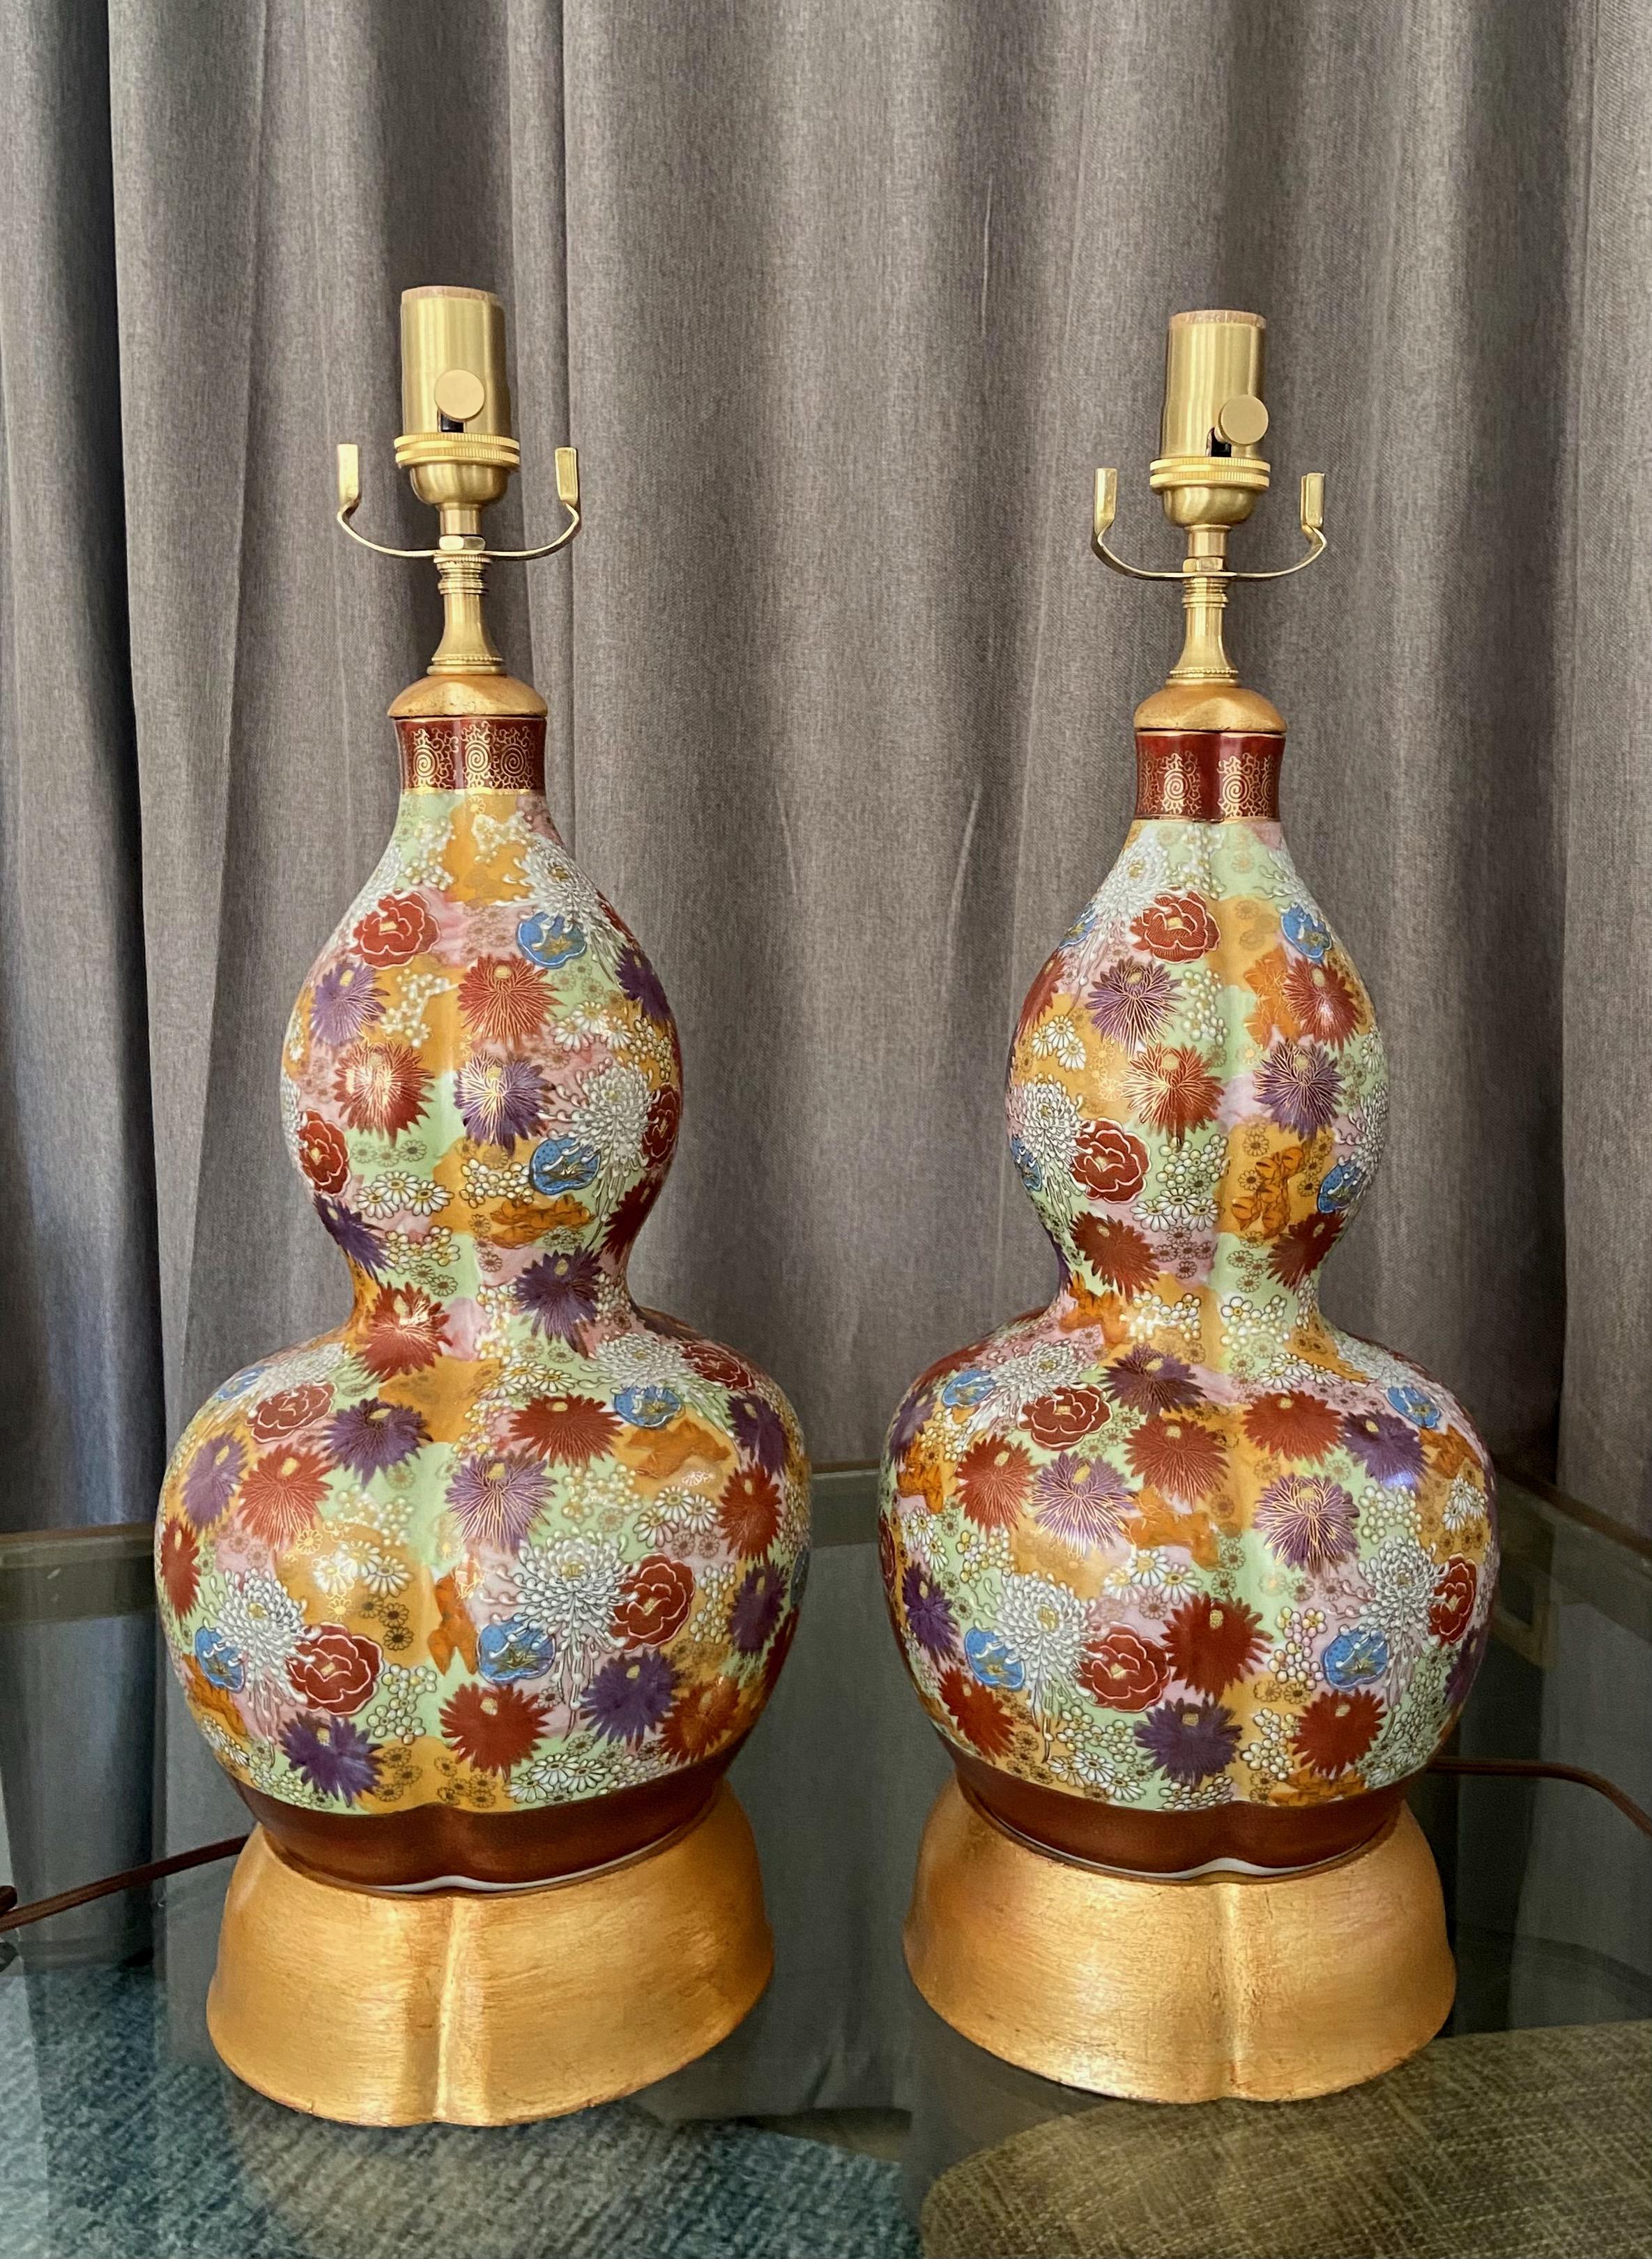 Paire de vases japonais Satsuma à motifs floraux peints à la main, montés sur des pieds de lampe en bois tourné et doré.  Les vases sont abondamment et savamment peints de différentes fleurs et fleurs dans un éventail de couleurs riches. Les deux